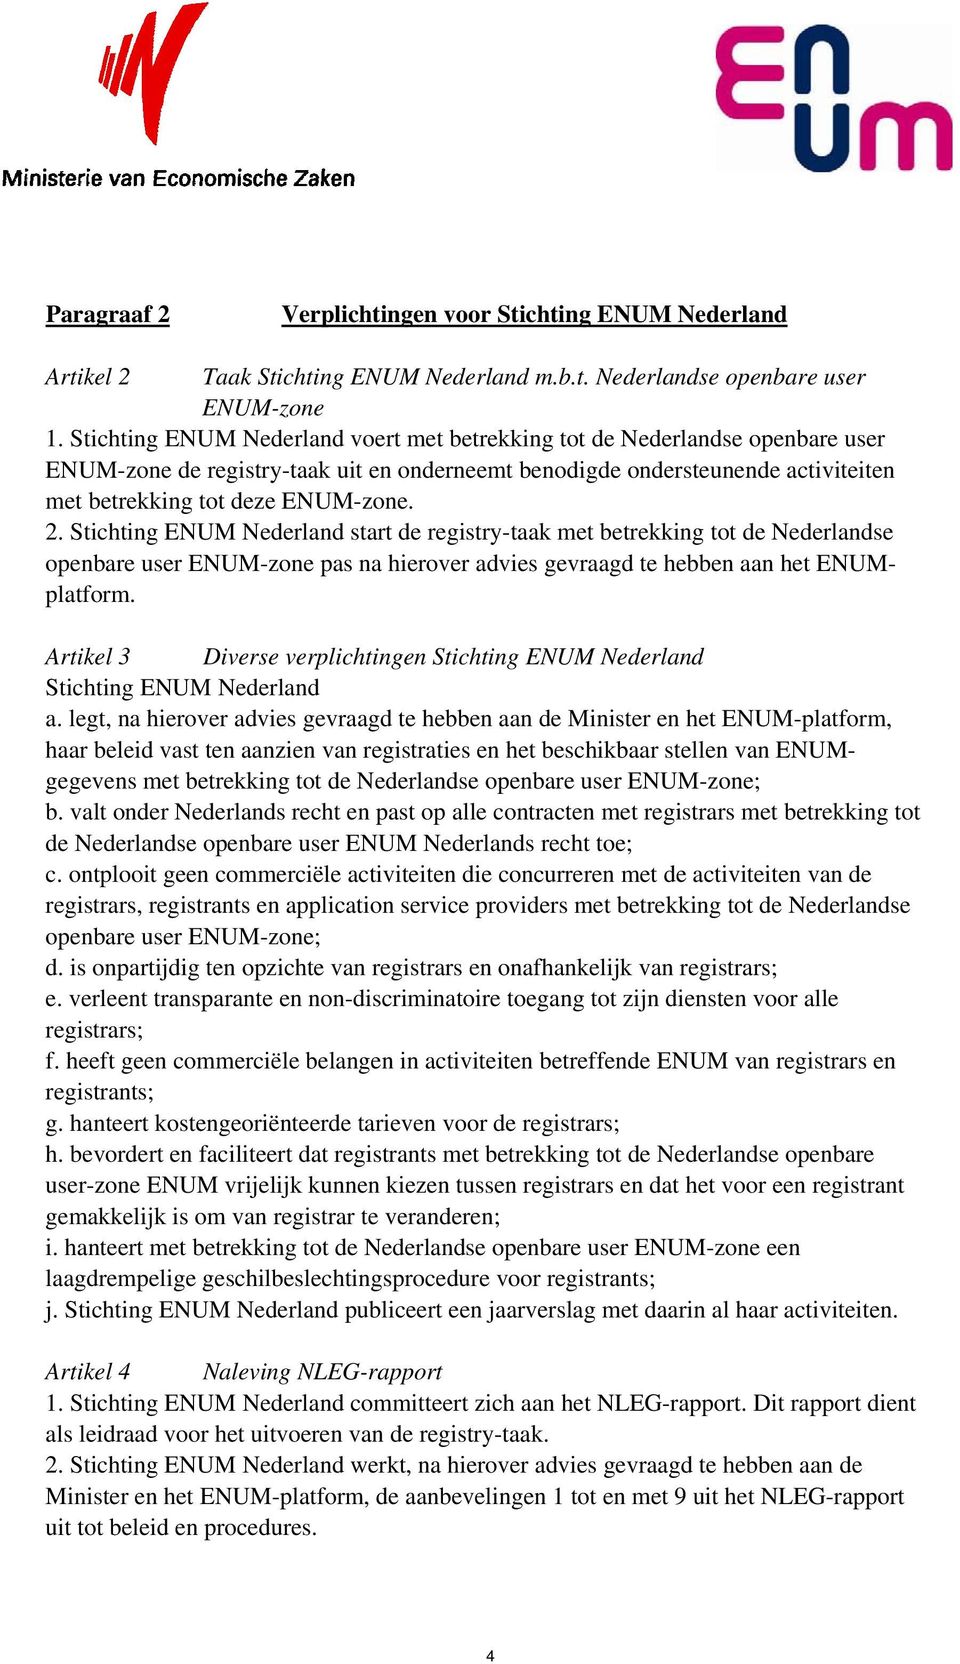 Stichting ENUM Nederland start de registry-taak met betrekking tot de Nederlandse openbare user ENUM-zone pas na hierover advies gevraagd te hebben aan het ENUMplatform.